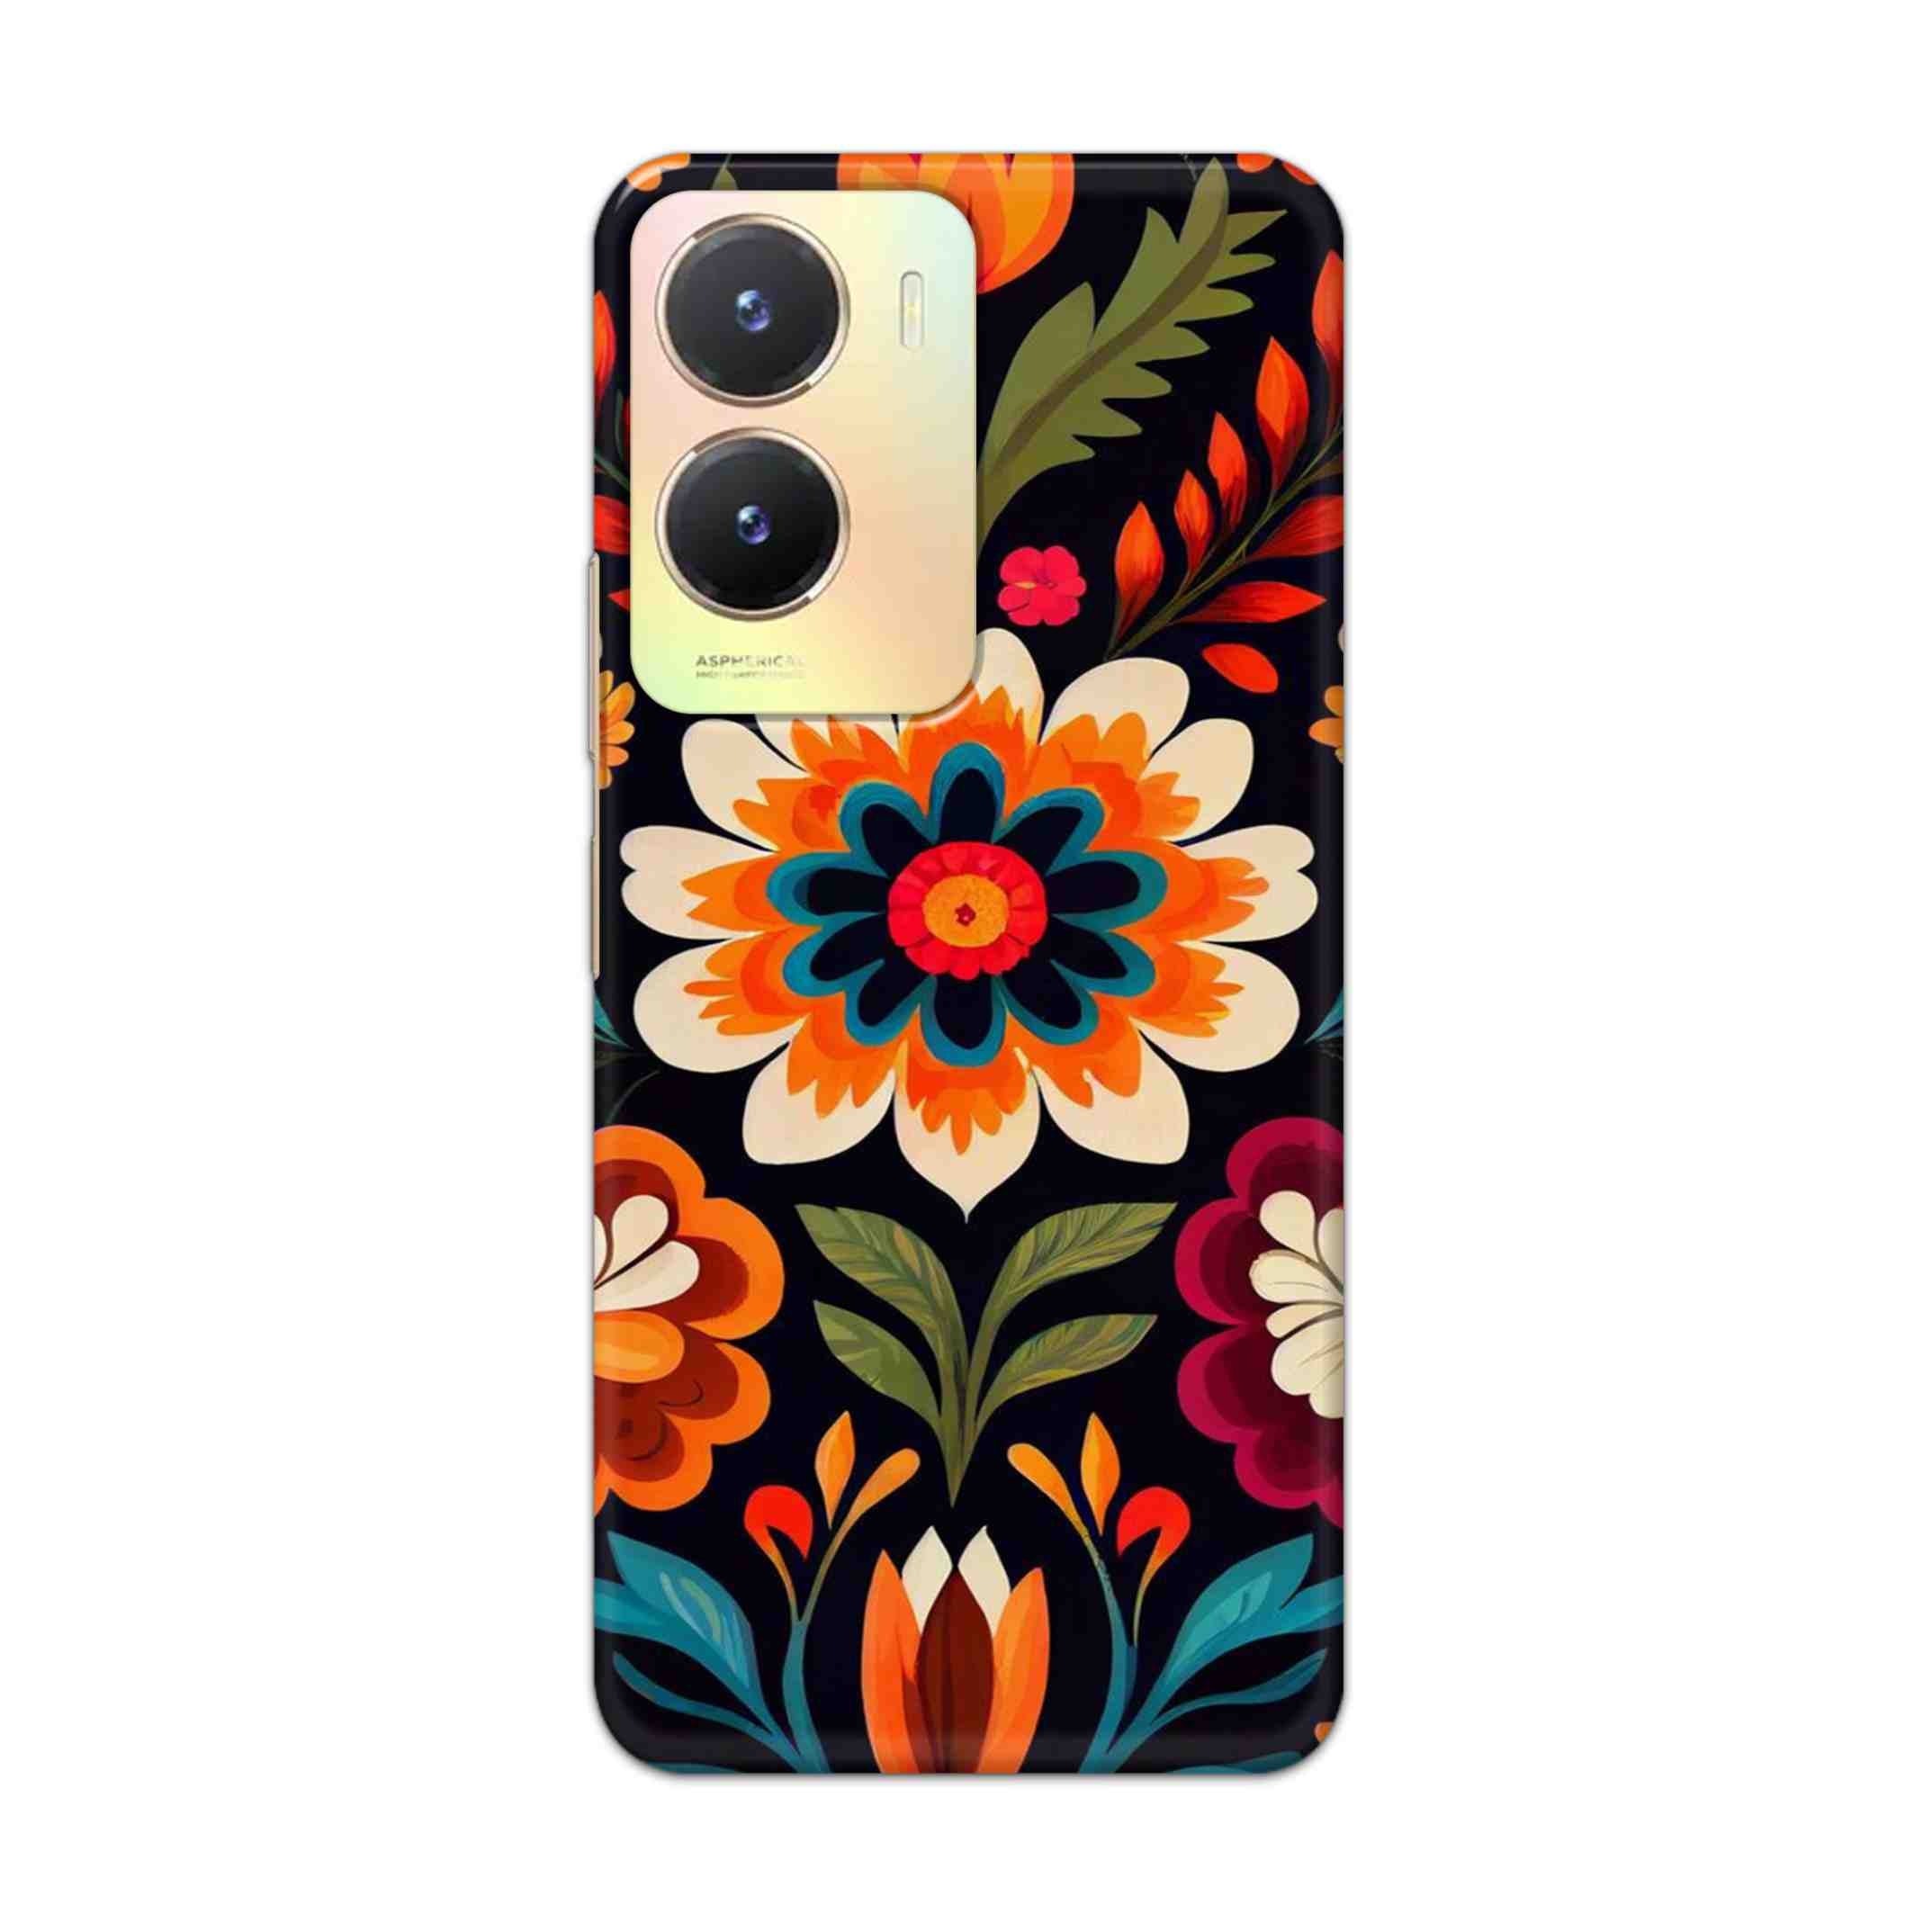 Buy Flower Hard Back Mobile Phone Case Cover For Vivo T2x Online